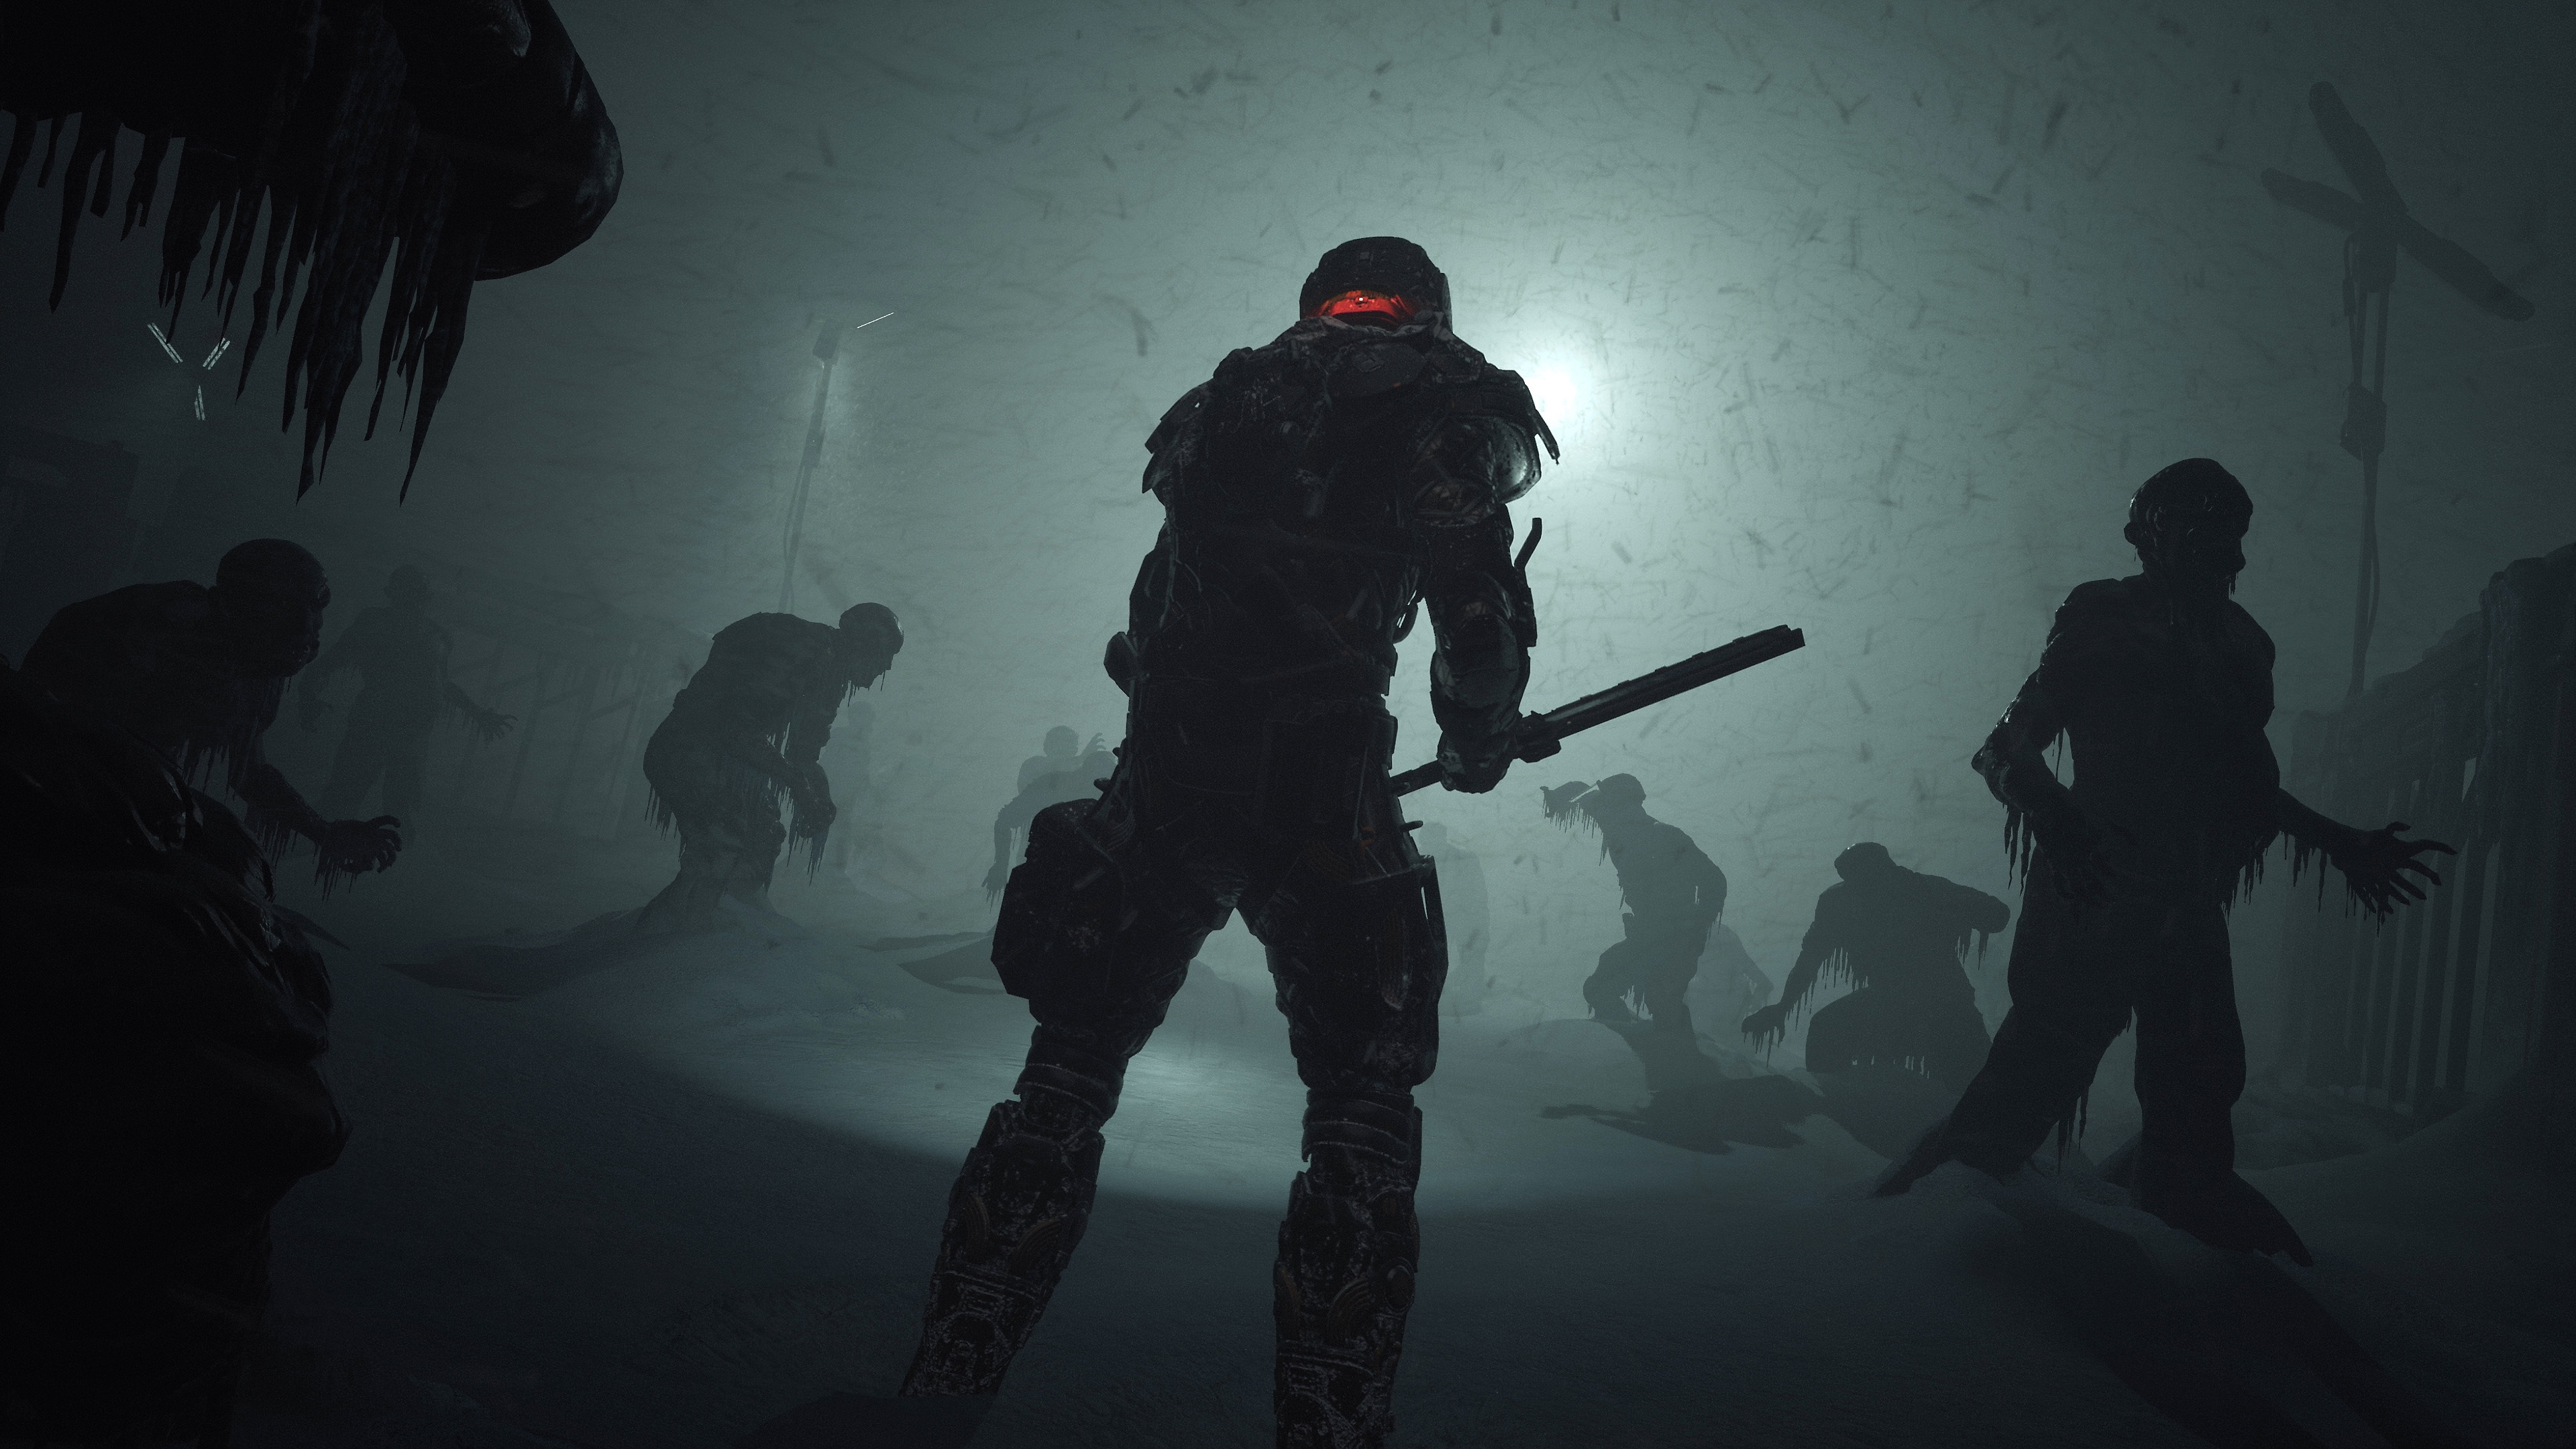 Snímka obrazovky z hry The Callisto Protocol zobrazujúca postavu so zbraňou pripomínajúca obušok, ktorá čelí niekoľkým zmrznutým telám.